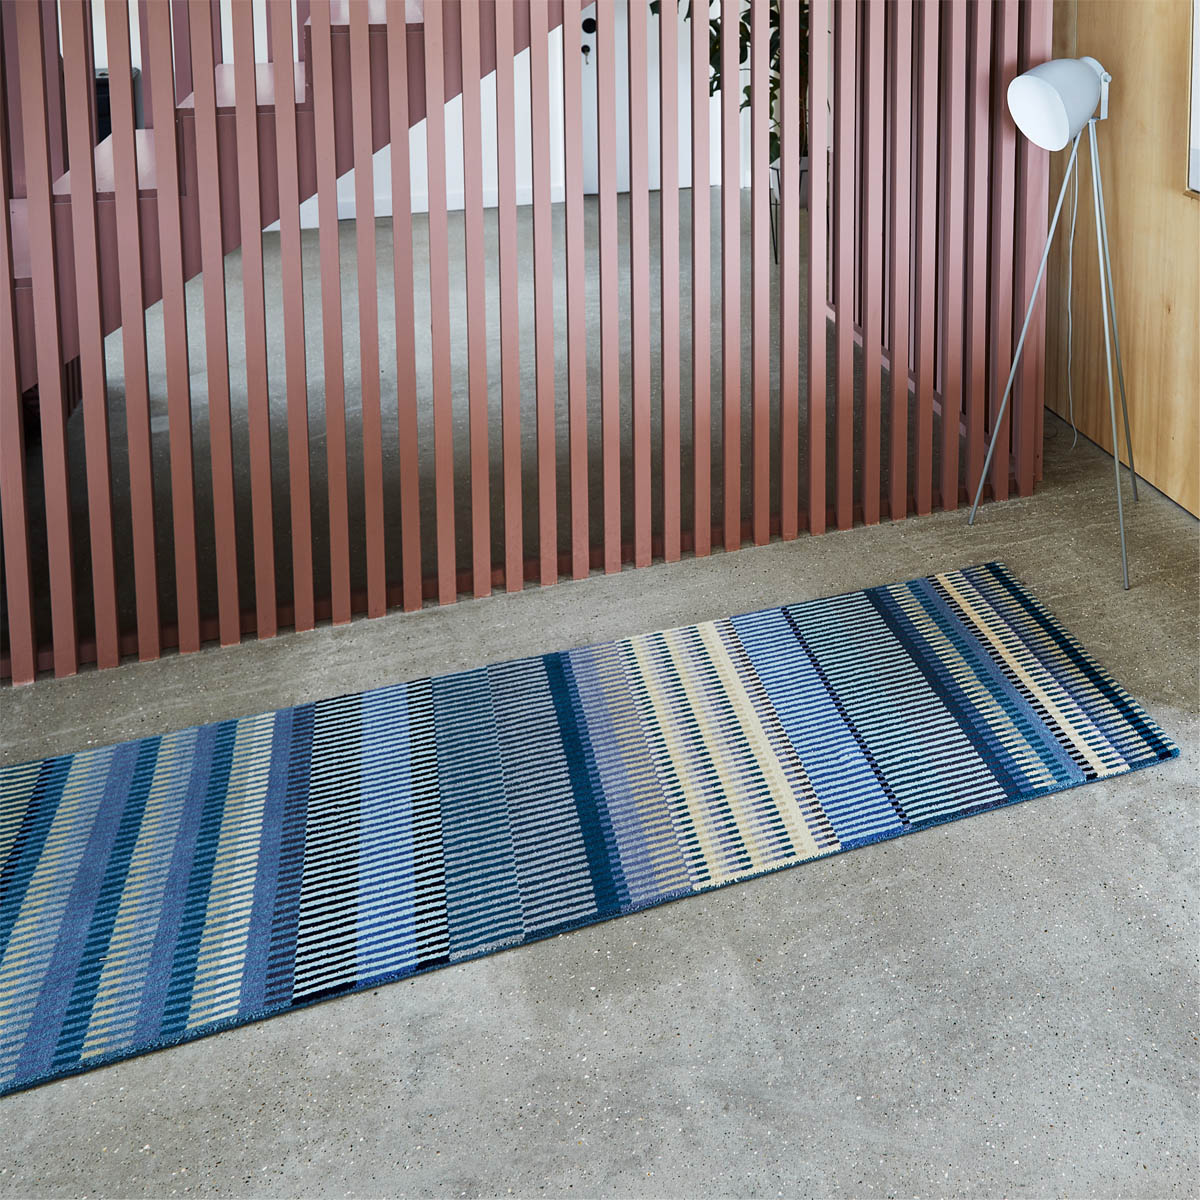 luxury rug, geometric rug, modern rug, wool rug, blue rug, designer rugs